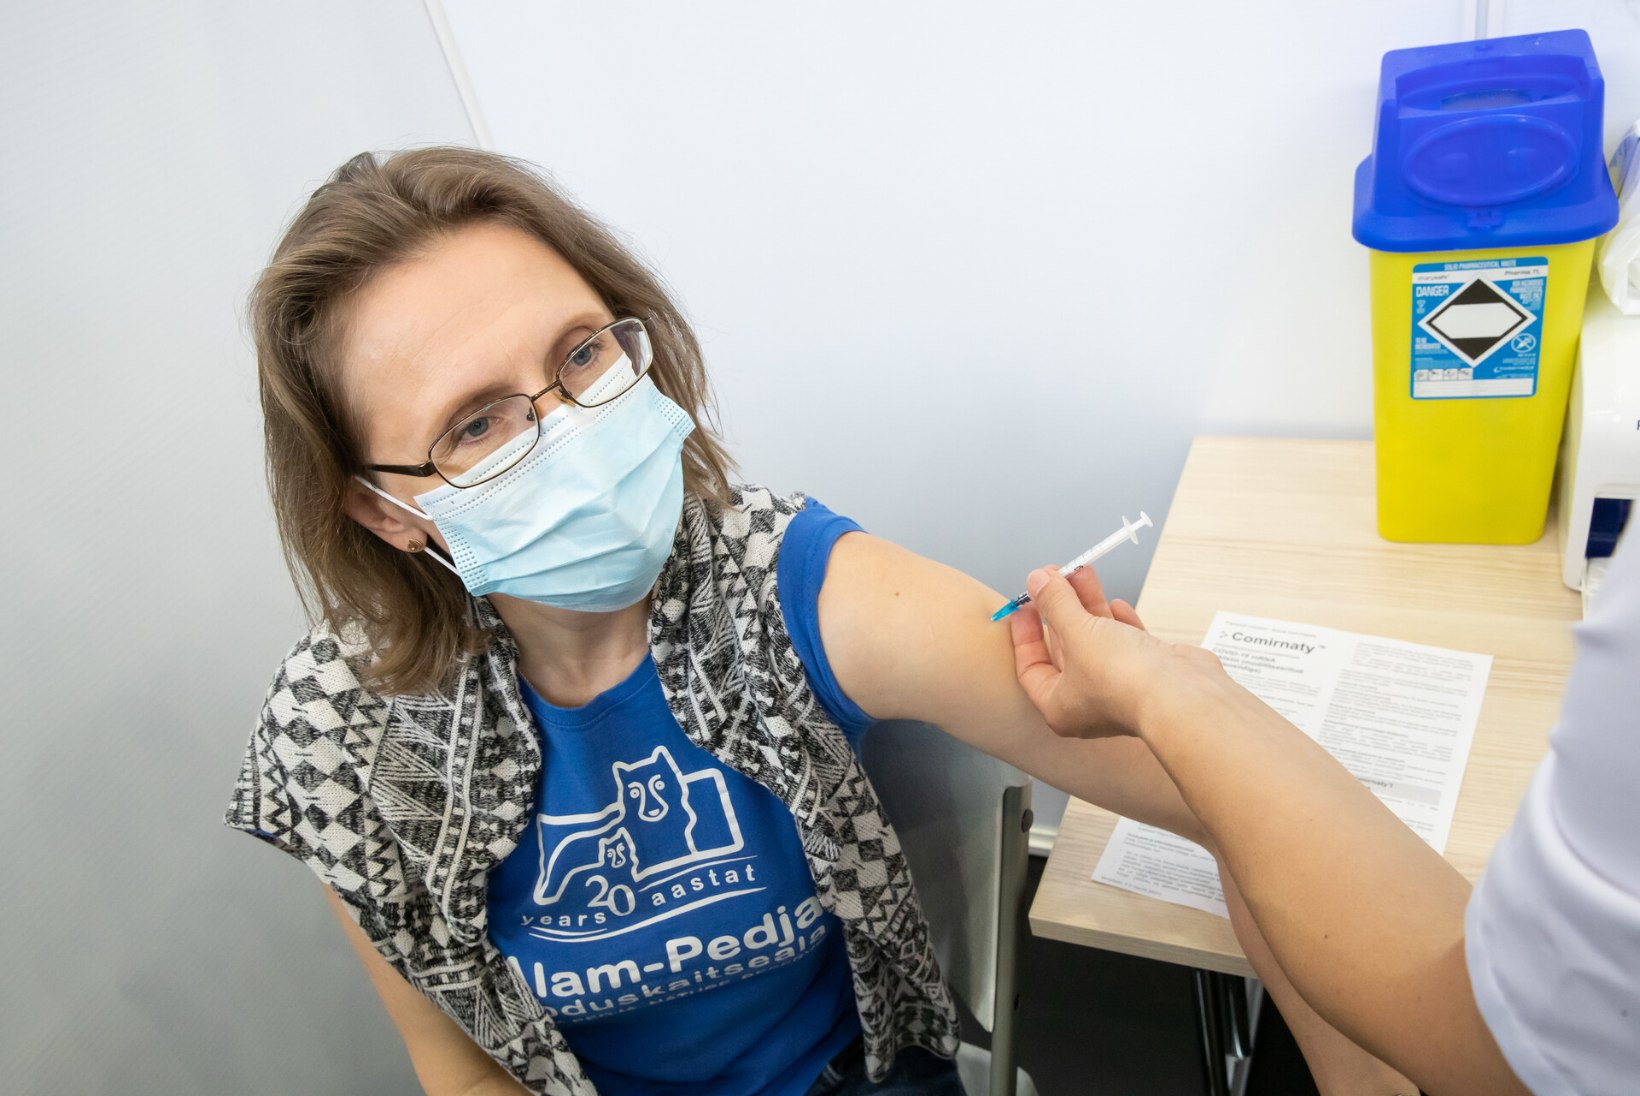 Eestis on vähemalt ühe doosiga Covid-19 vastu vaktsineeritud enam kui 700 000 inimest